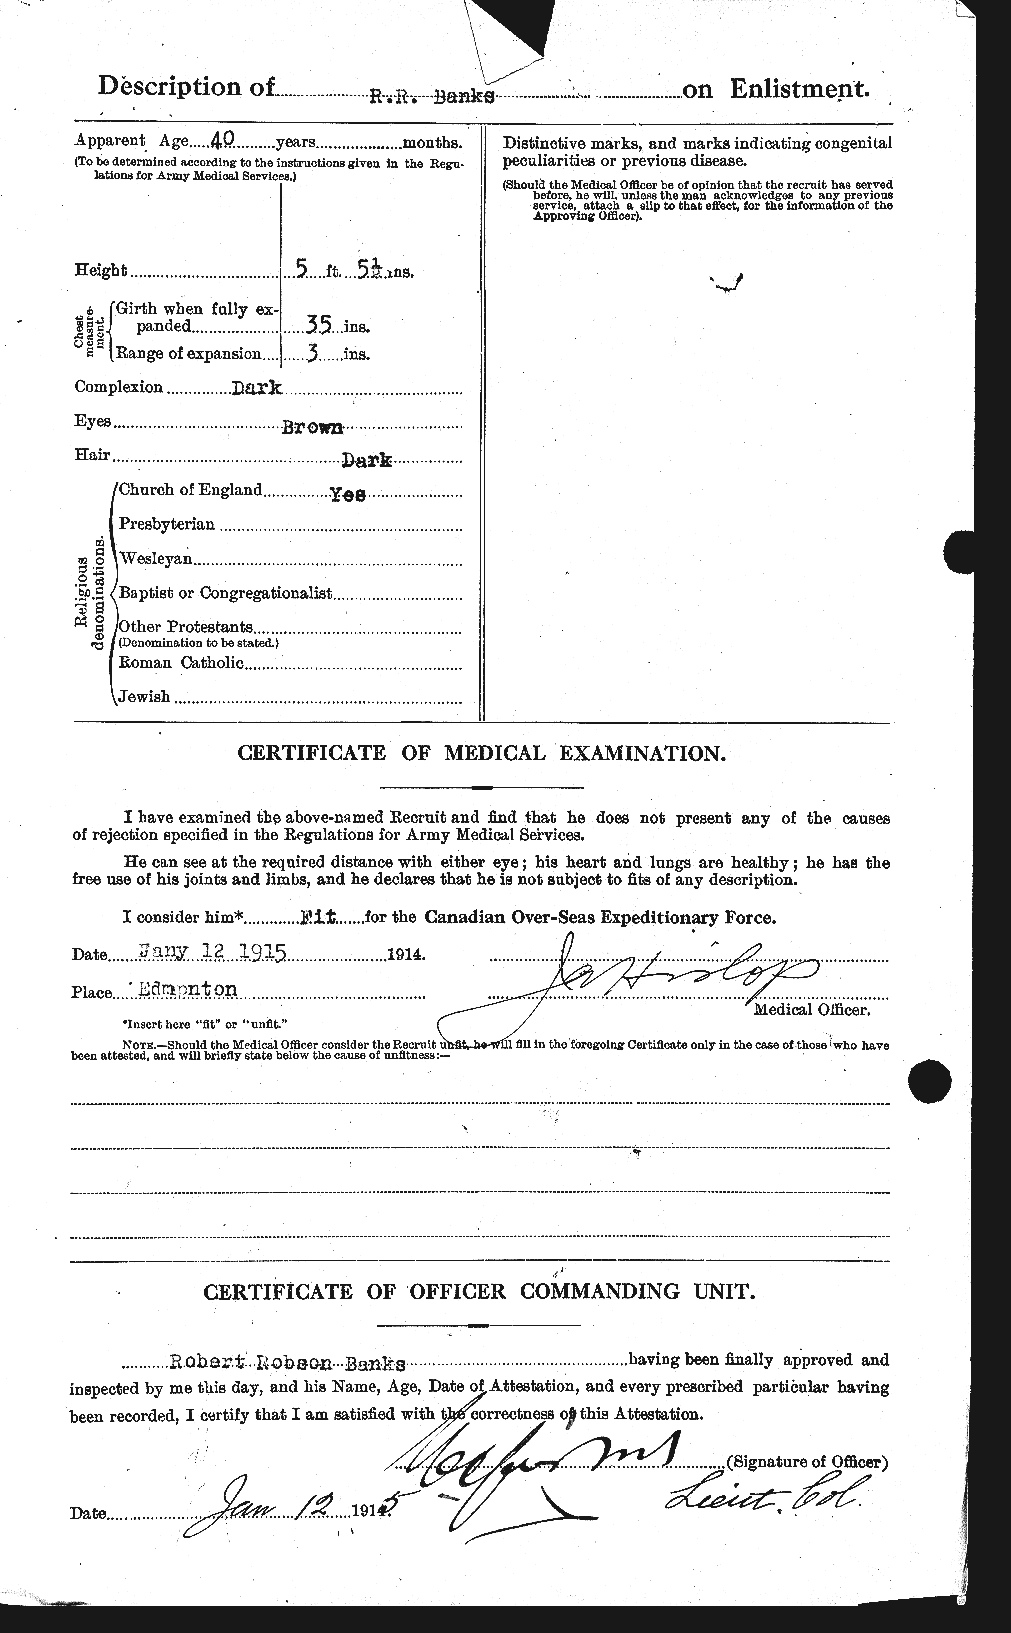 Dossiers du Personnel de la Première Guerre mondiale - CEC 224955b